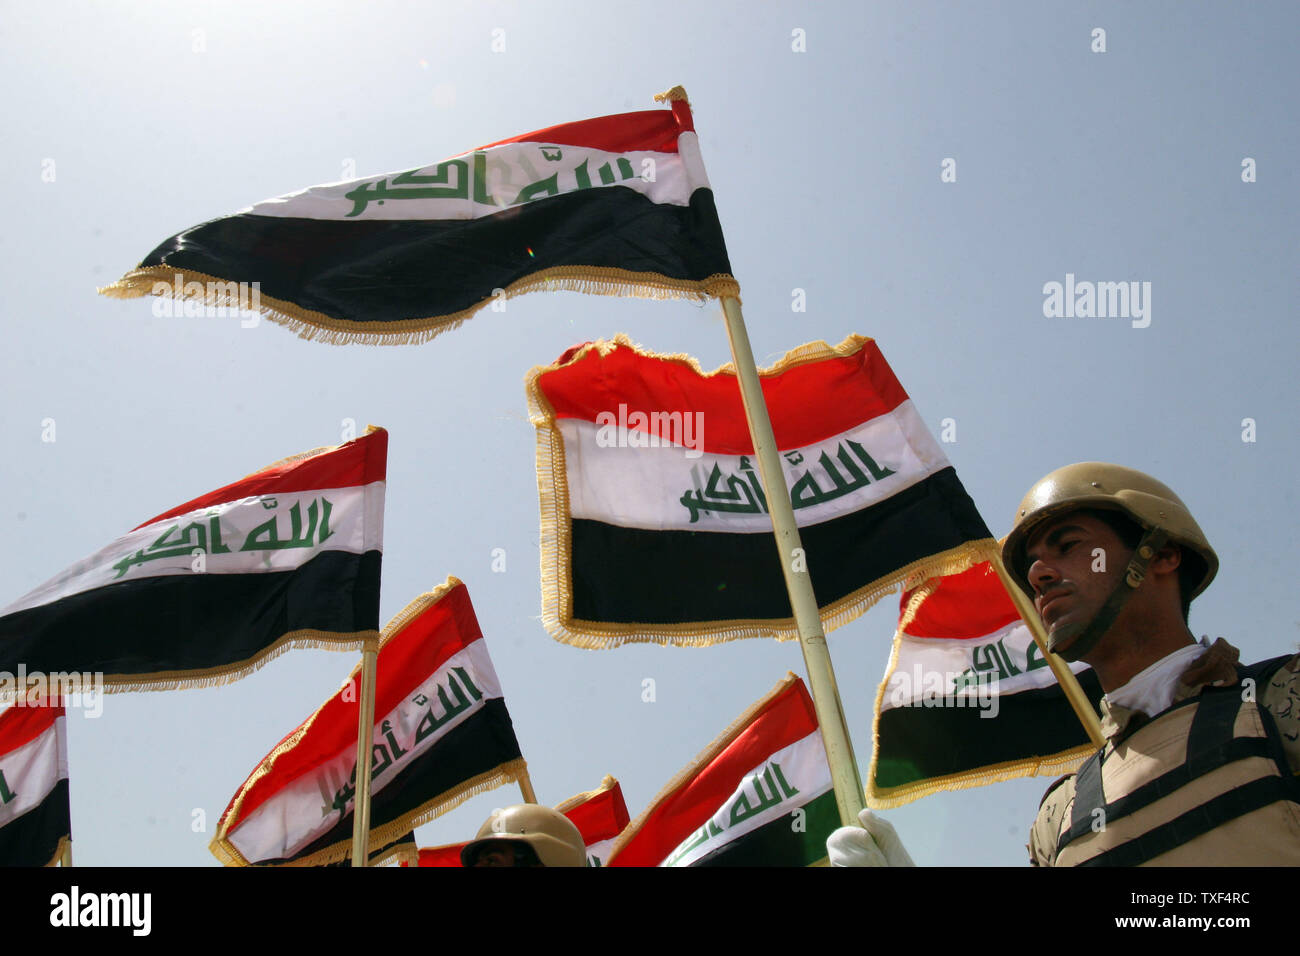 Soldati iracheni nella formazione durante la loro cerimonia di laurea presso una base militare vicino a Taji, 10 chilometri a nord di Bagdad il 10 luglio 2008. Questo è il più recente gruppo di soldati iracheni a laurearsi dopo essere stato addestrato dai militari americani. (UPI foto/Ali Jasim) Foto Stock